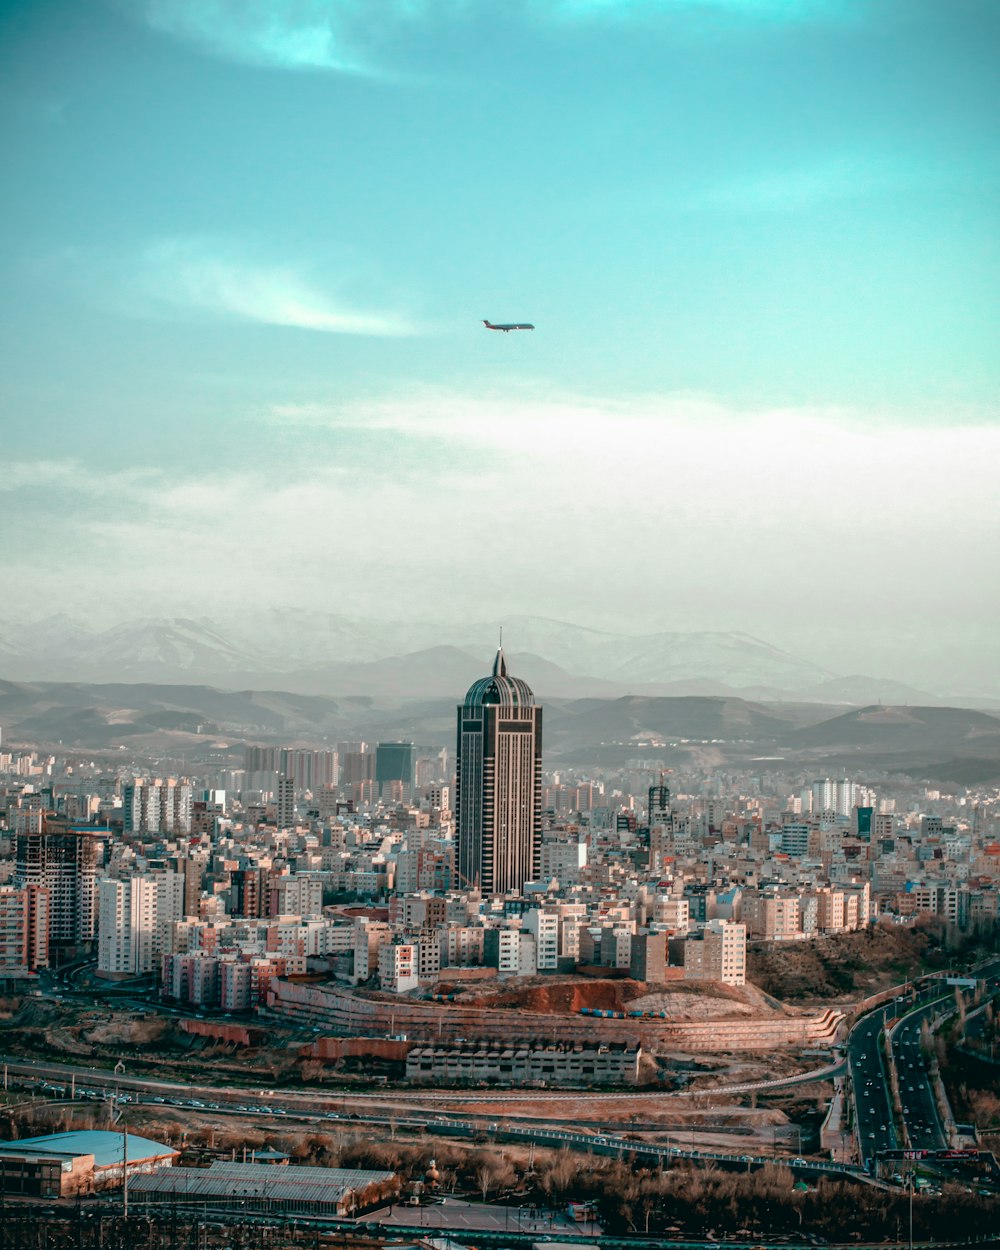 Un avion survolant une ville avec de grands immeubles